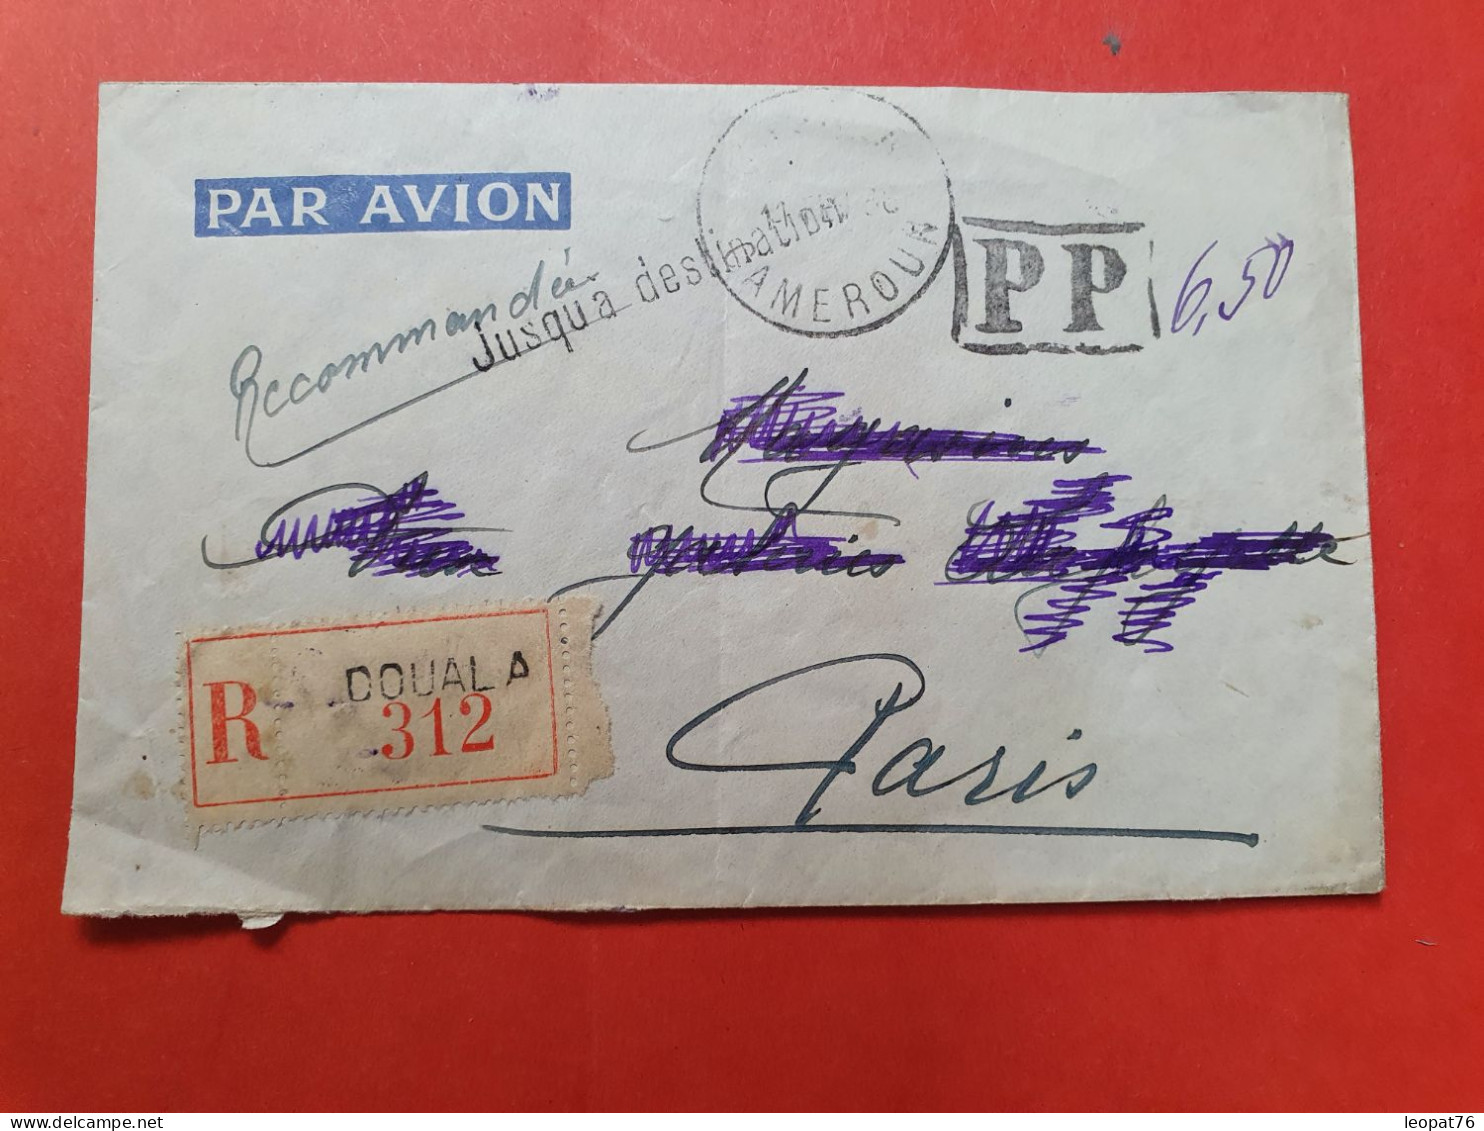 Cameroun - Enveloppe En Recommandé De Douala En PP Pour Paris En 1938 - D 31 - Briefe U. Dokumente